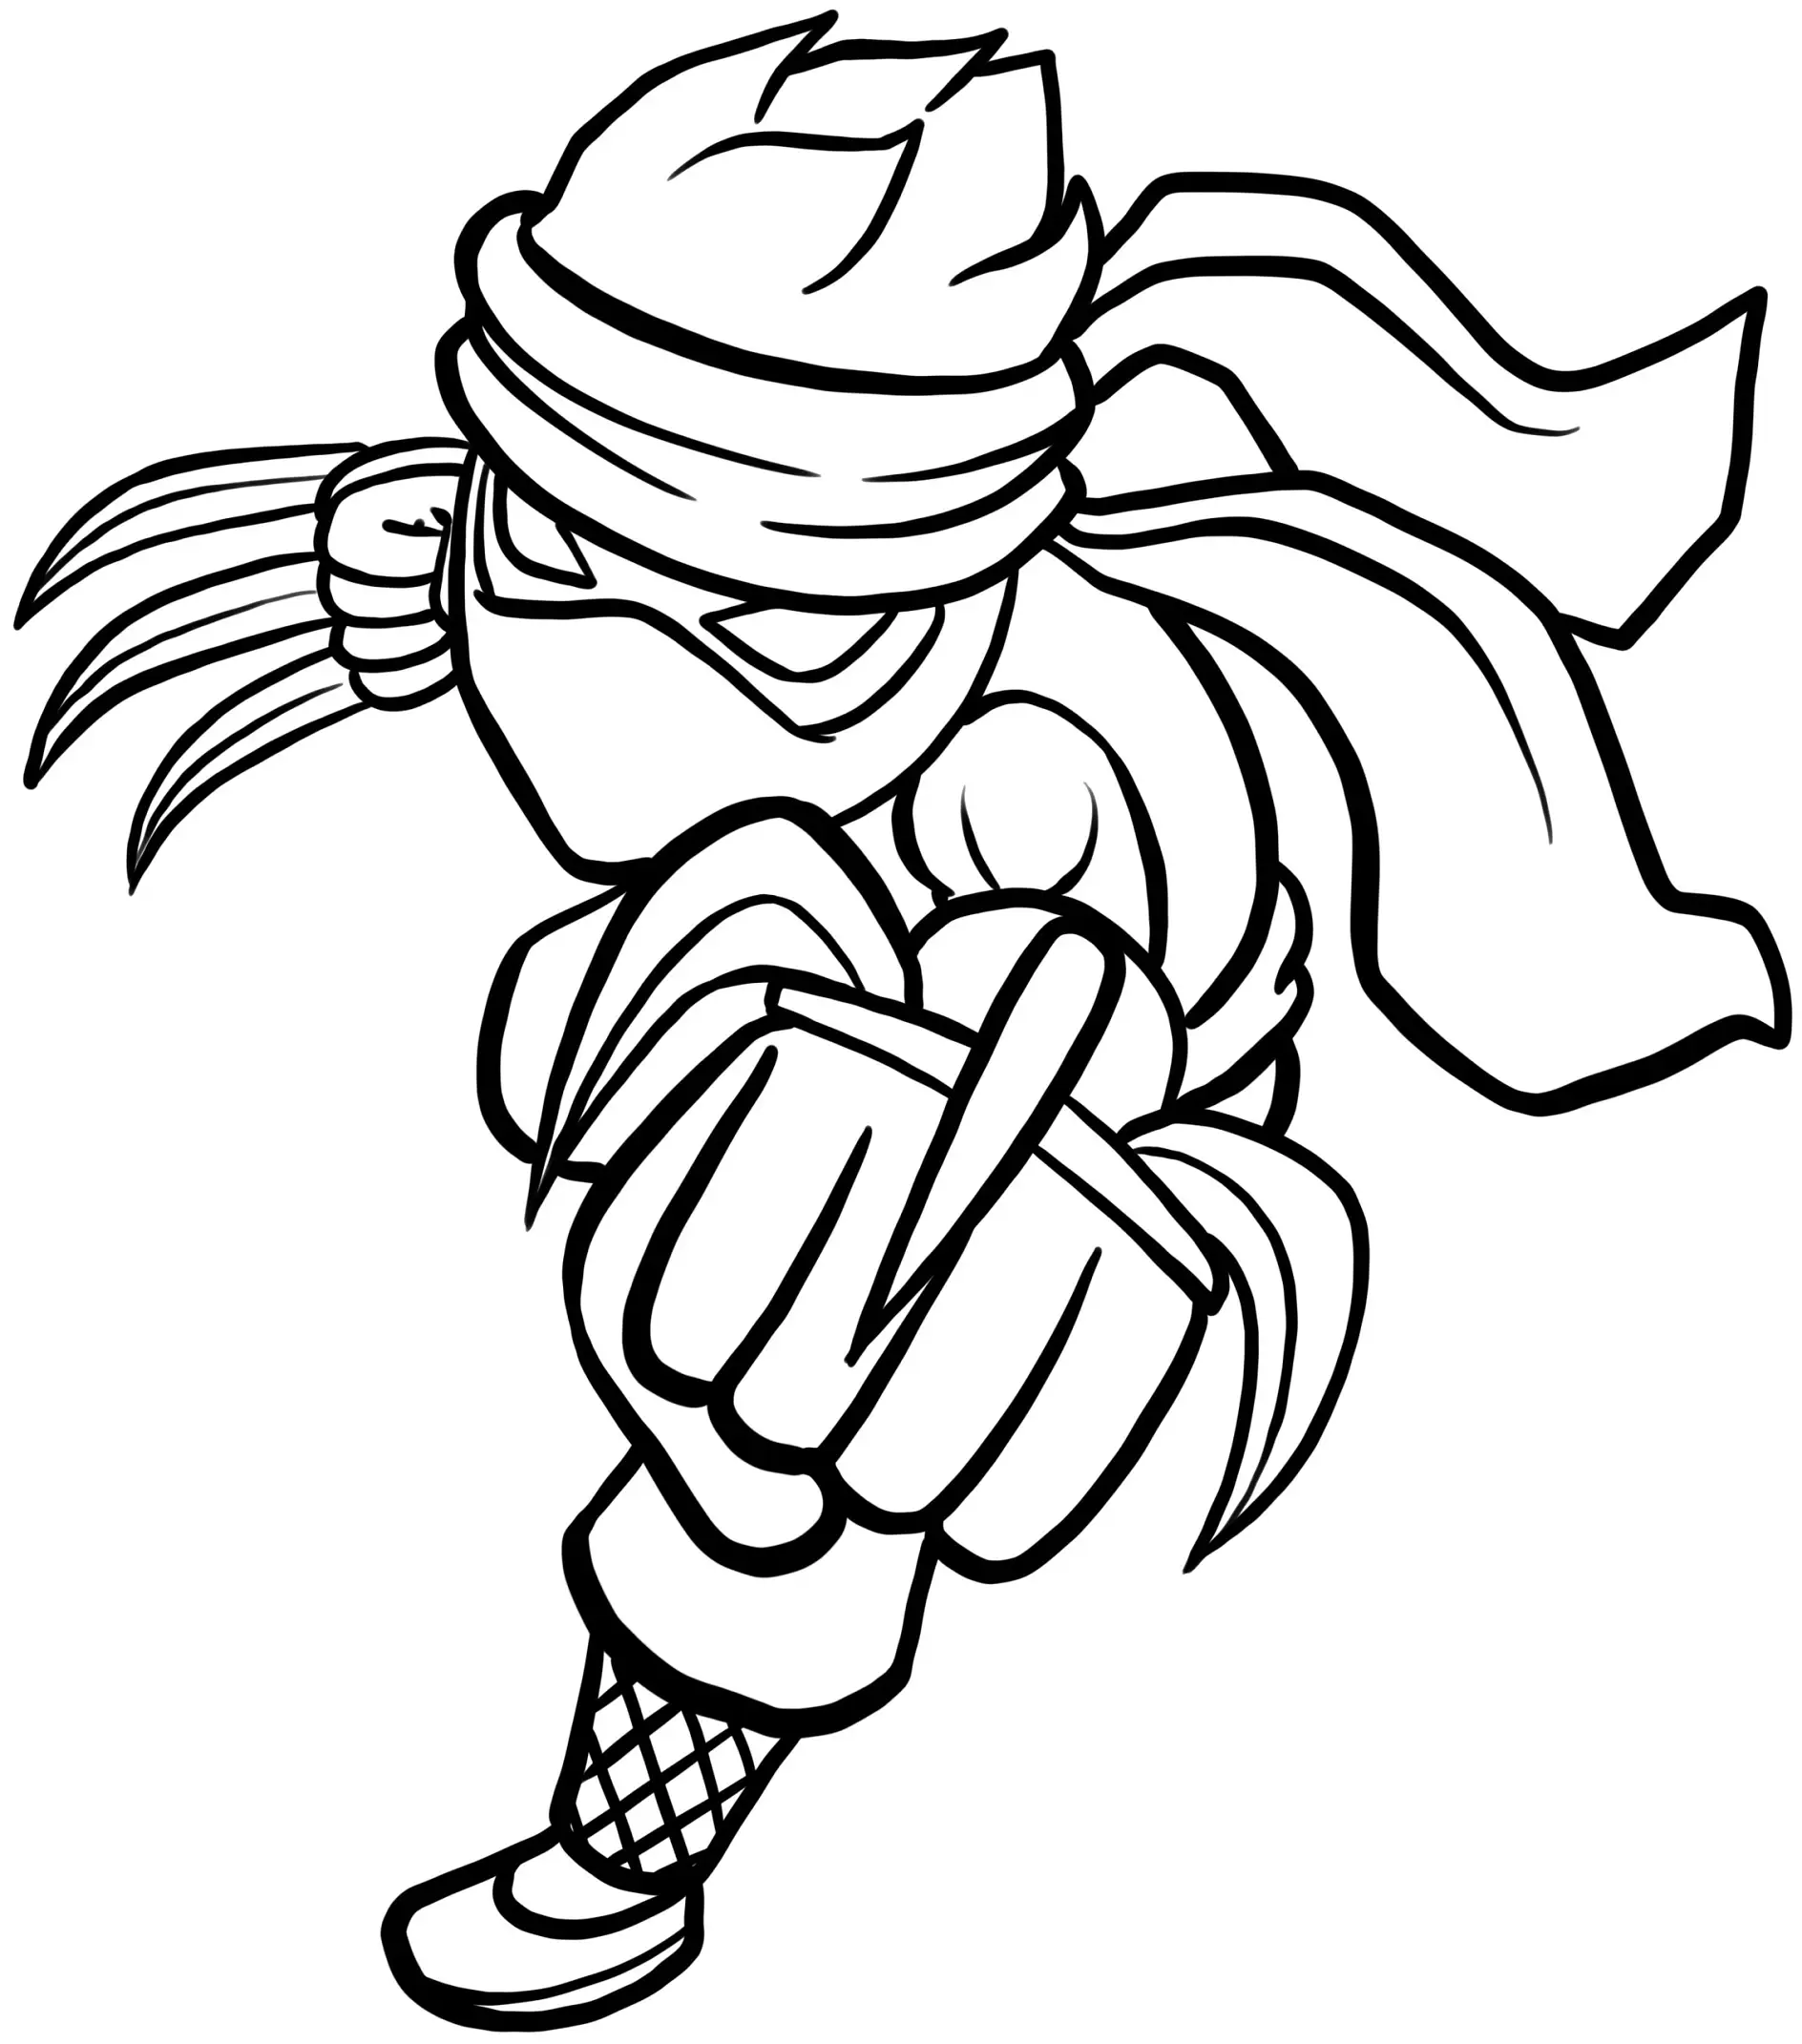 Ausmalbild Ninja rennt mit Stirnband und Fäusten